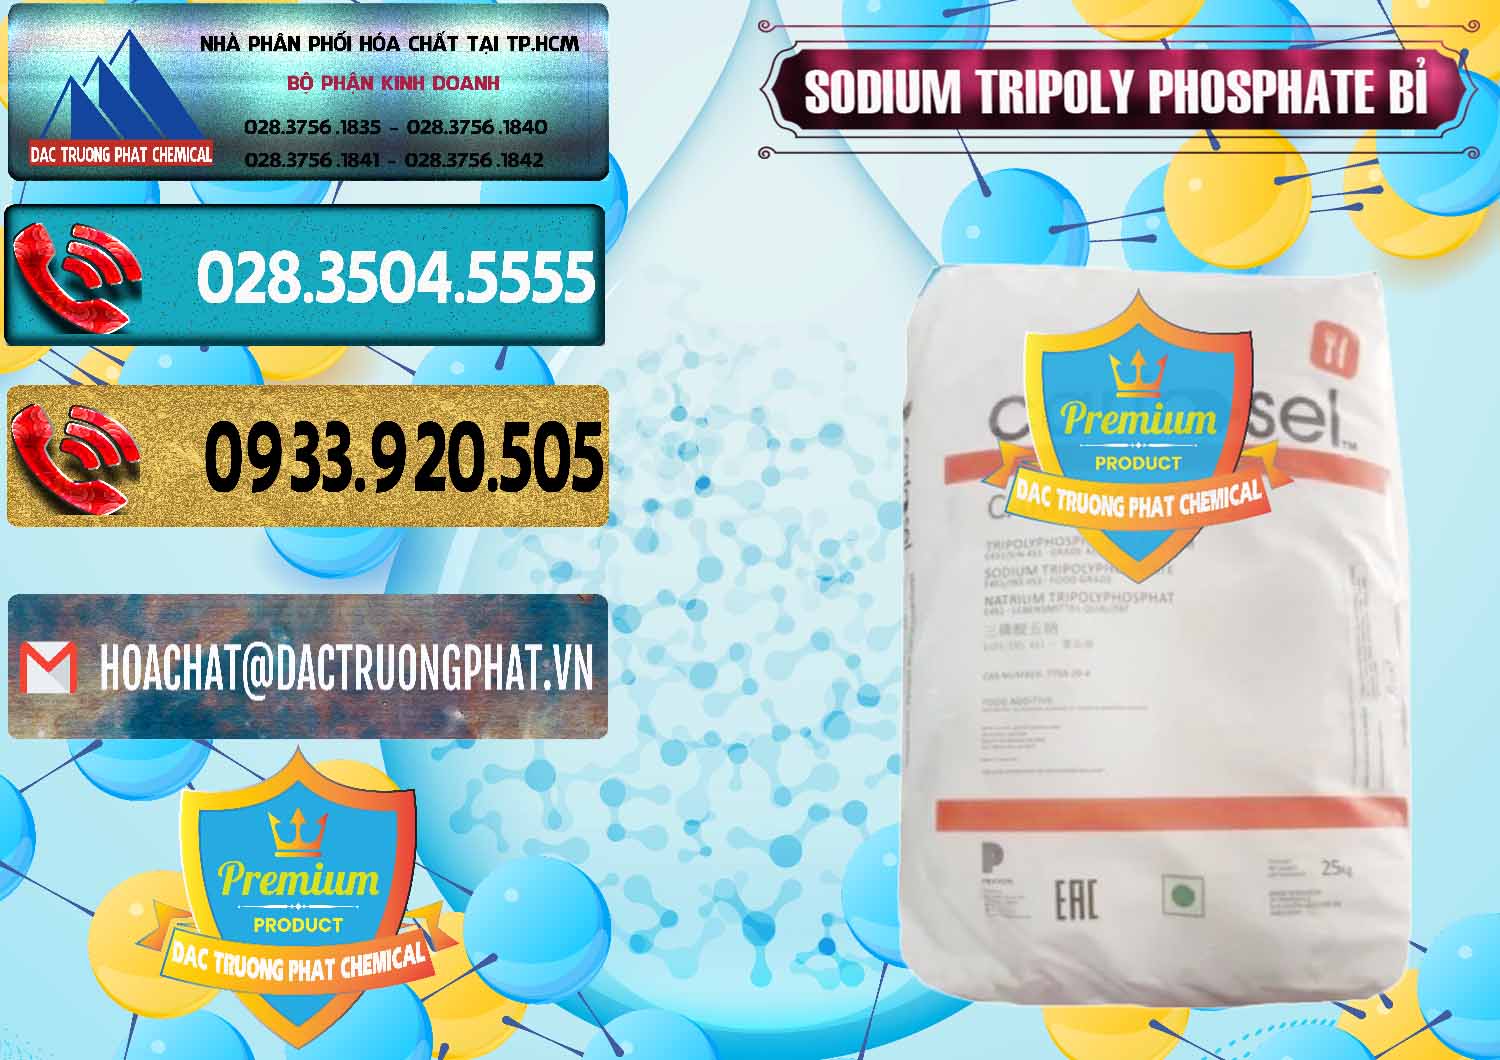 Cty chuyên bán - cung cấp Sodium Tripoly Phosphate - STPP Carfosel 991 Bỉ Belgium - 0429 - Công ty chuyên phân phối ( cung ứng ) hóa chất tại TP.HCM - hoachatdetnhuom.com